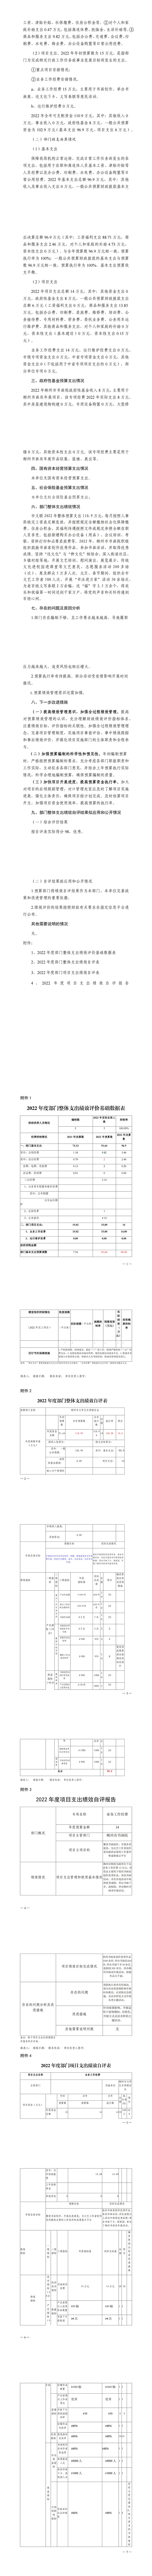 461002-郴州市书画院2022年度部门决算公开_03.jpg